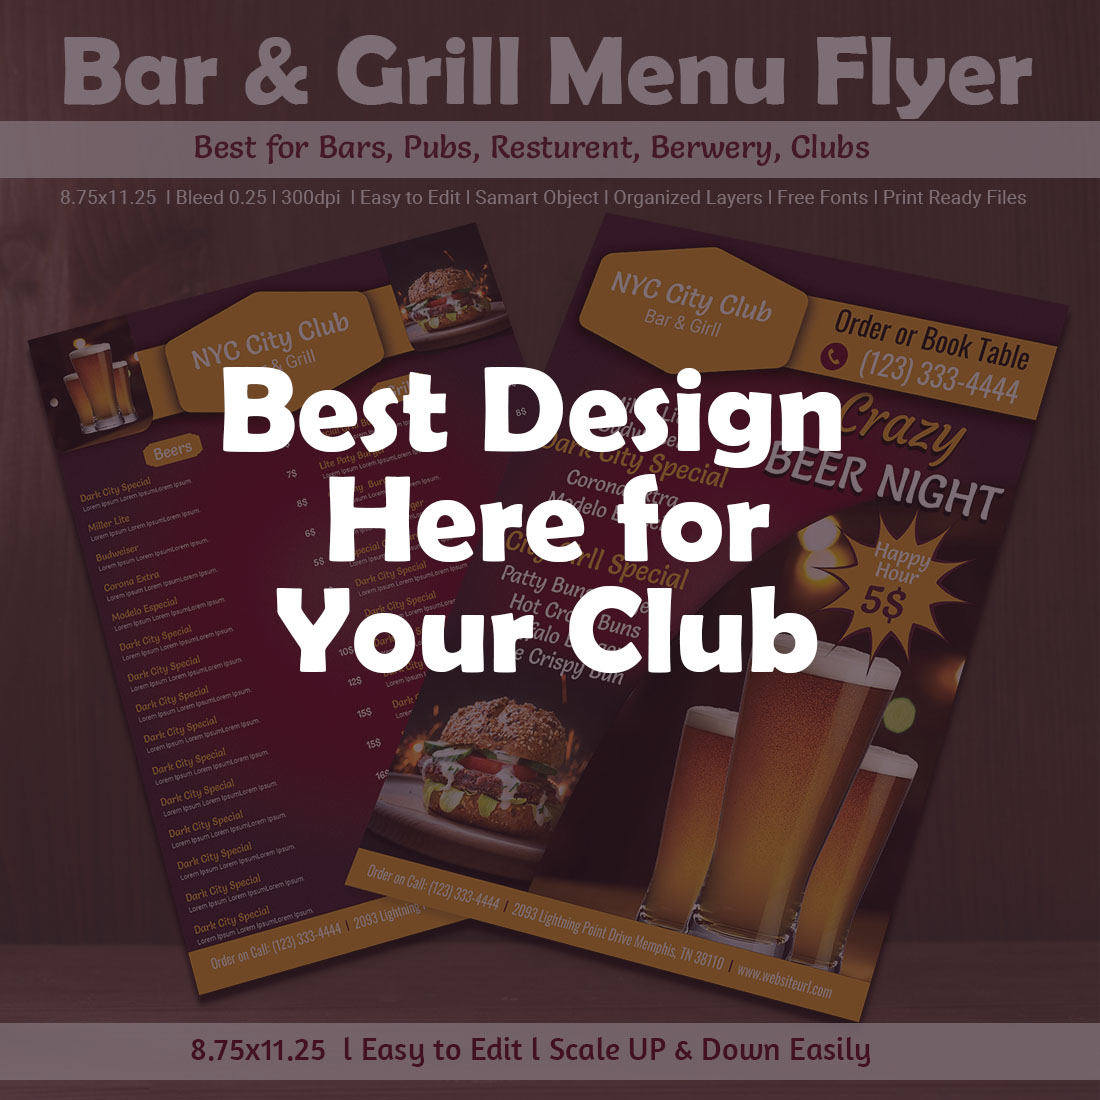 Beer Bar & Grill Menu Restaurant Flyer cover image.